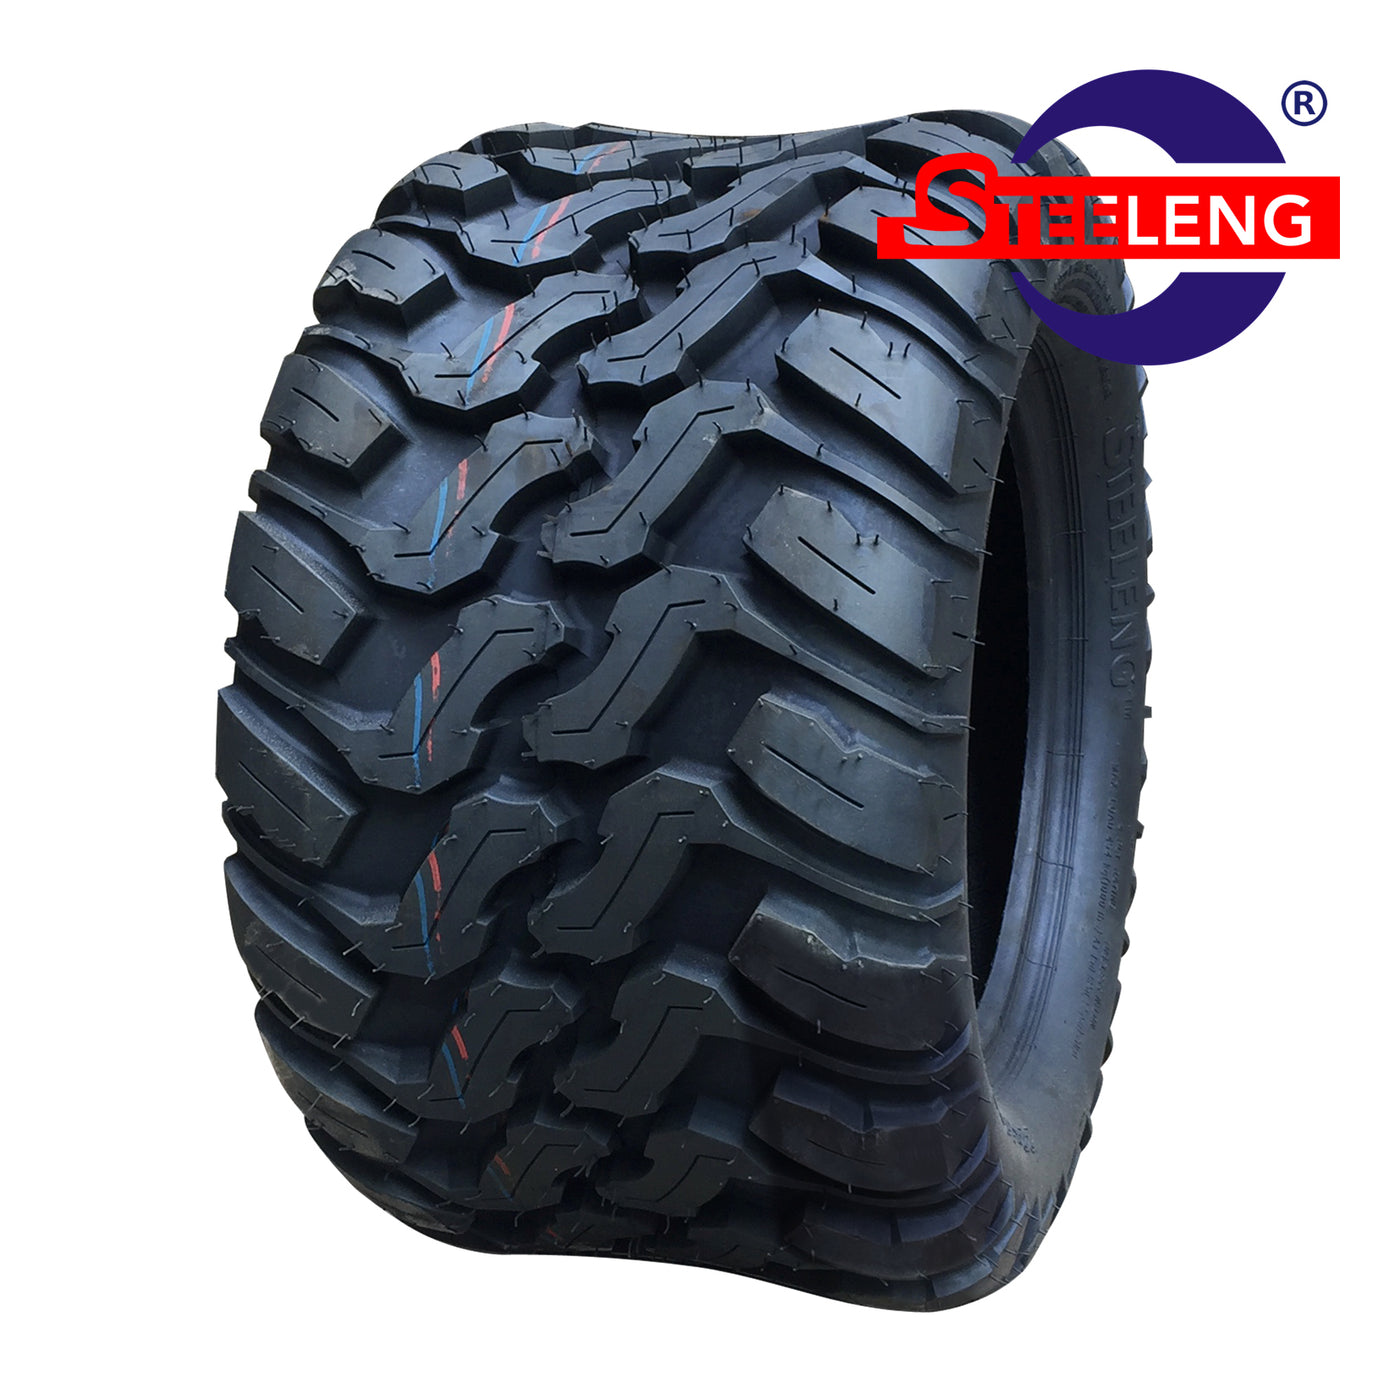 STEELENG 22″x10.5″-10″ DOT Mud-Terrain / All-Terrain Tire